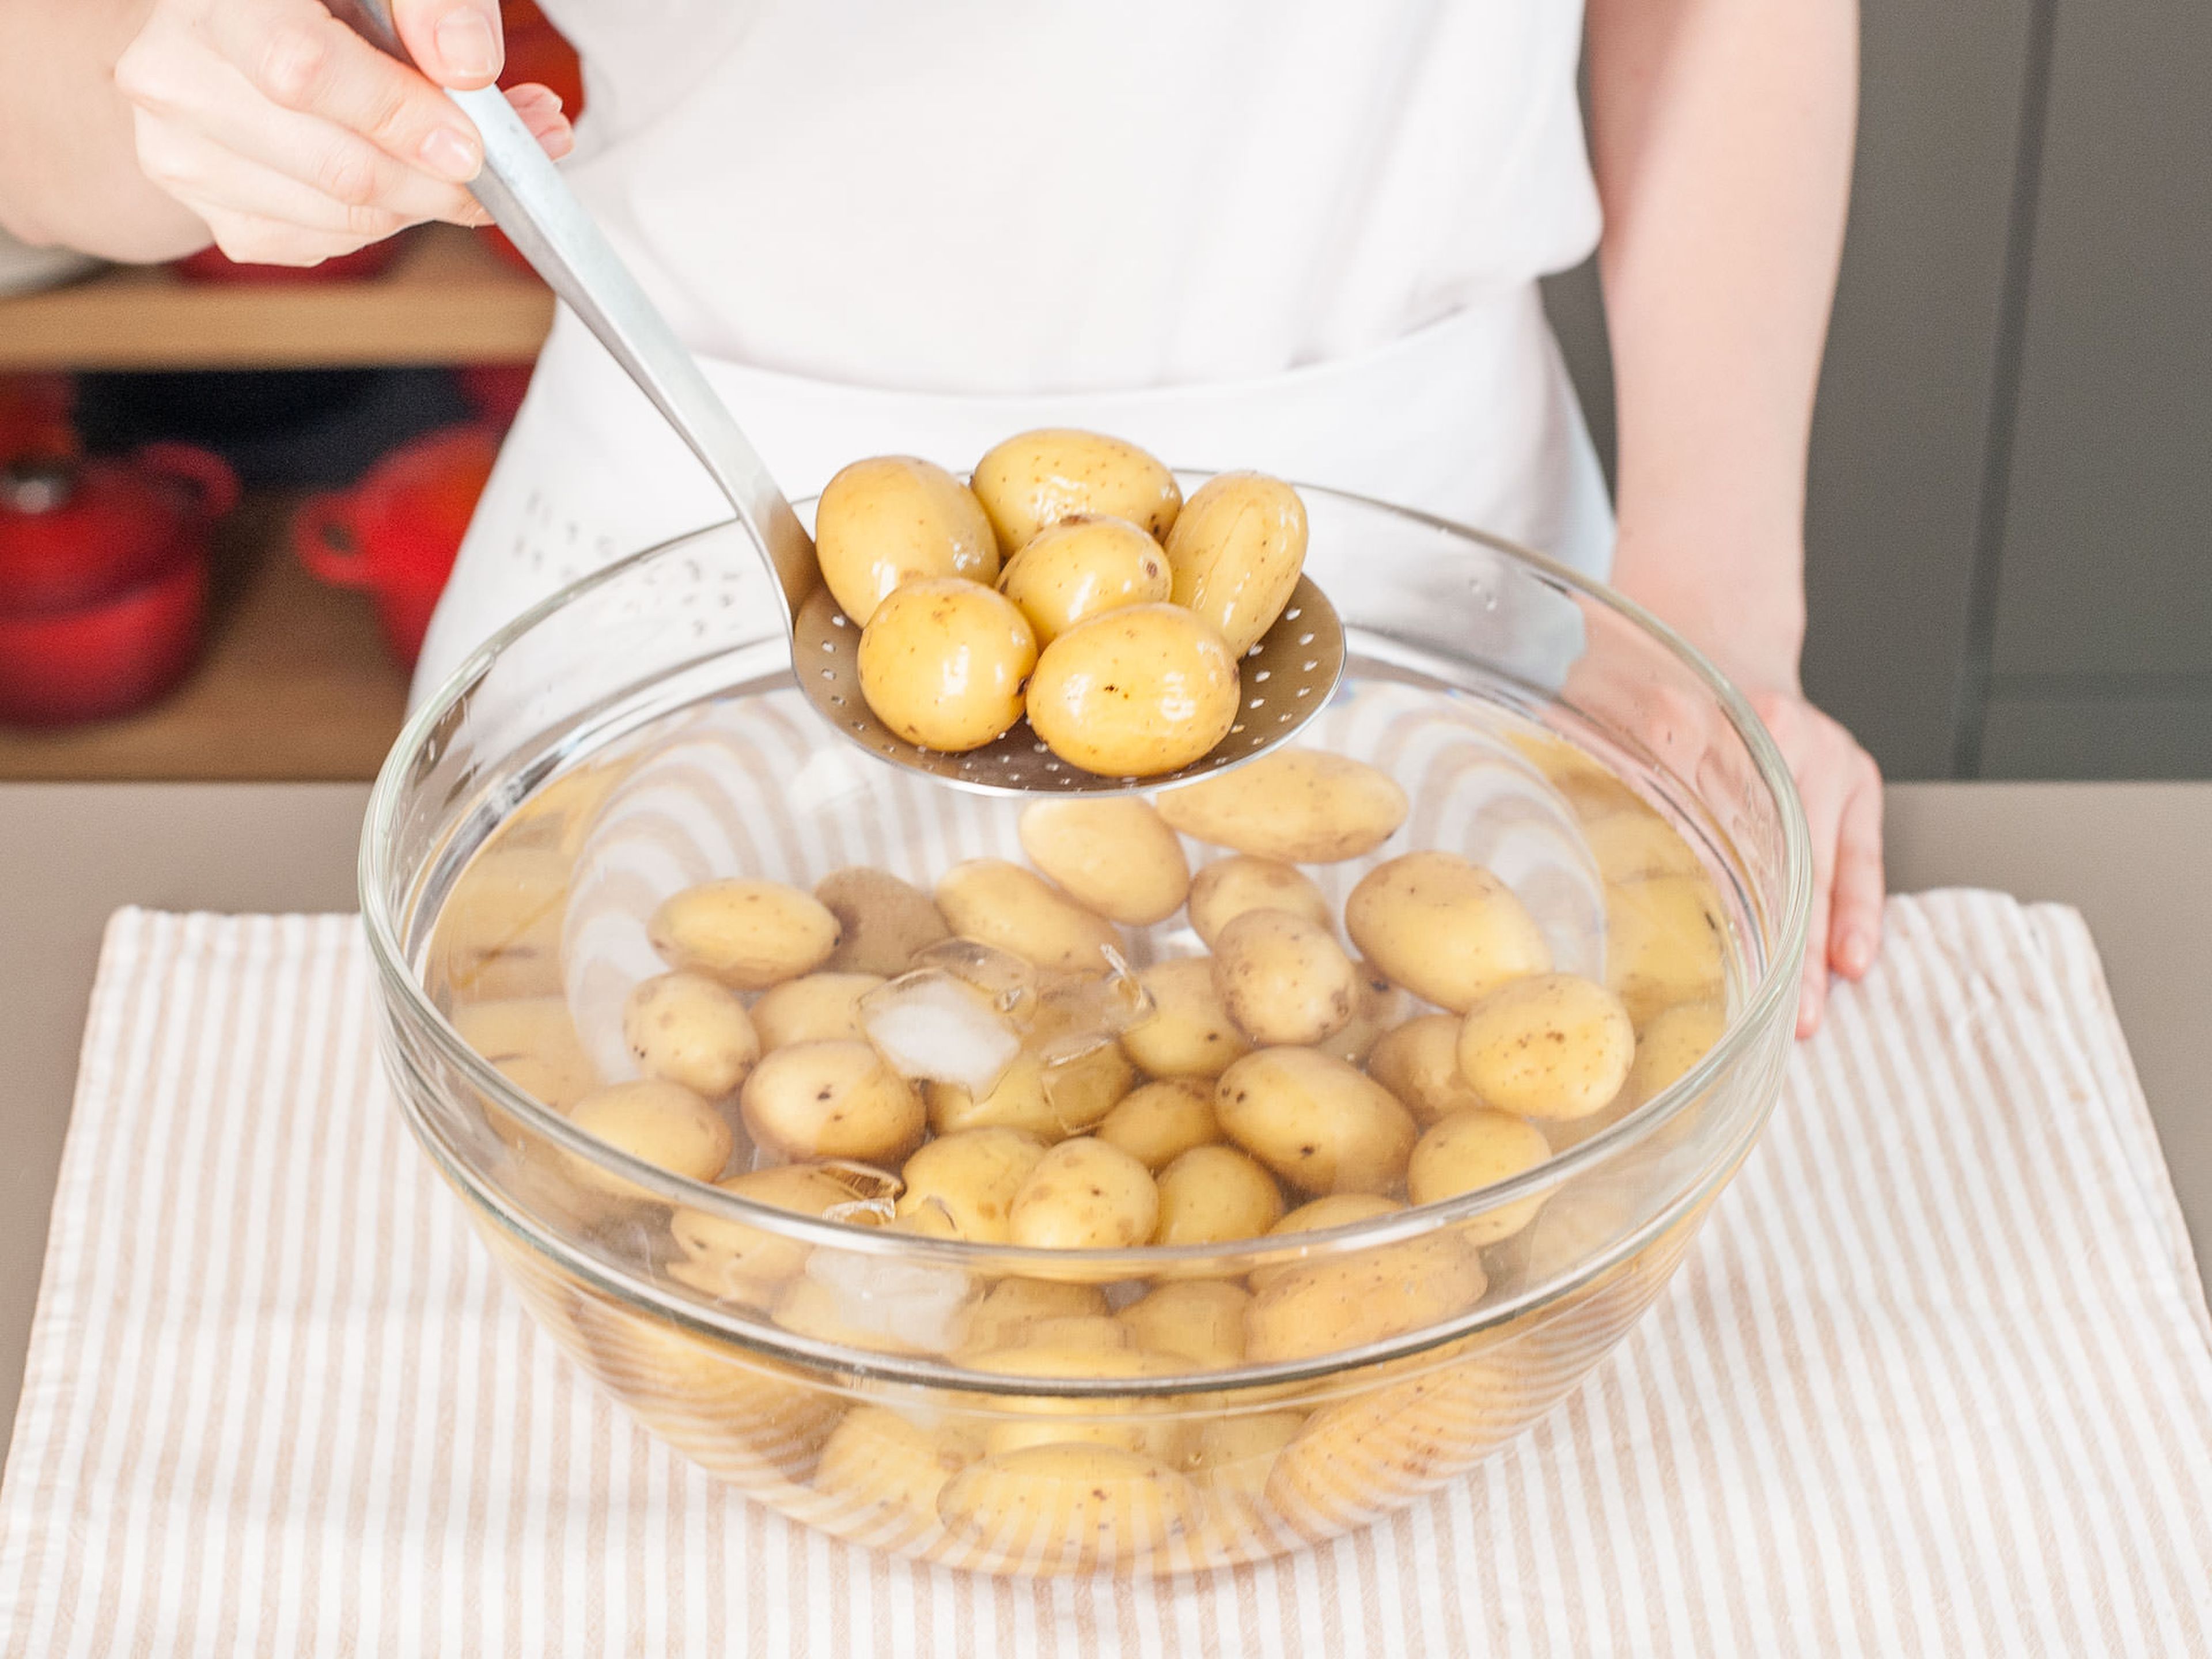 Die Kartoffeln in gesalzenem Wasser weich kochen. Danach für ein paar Minuten im Eisbad ruhen lassen und anschließend abgießen. Die Kartoffeln halbieren oder abhängig von der Größe vierteln. In eine große Rührschüssel geben.